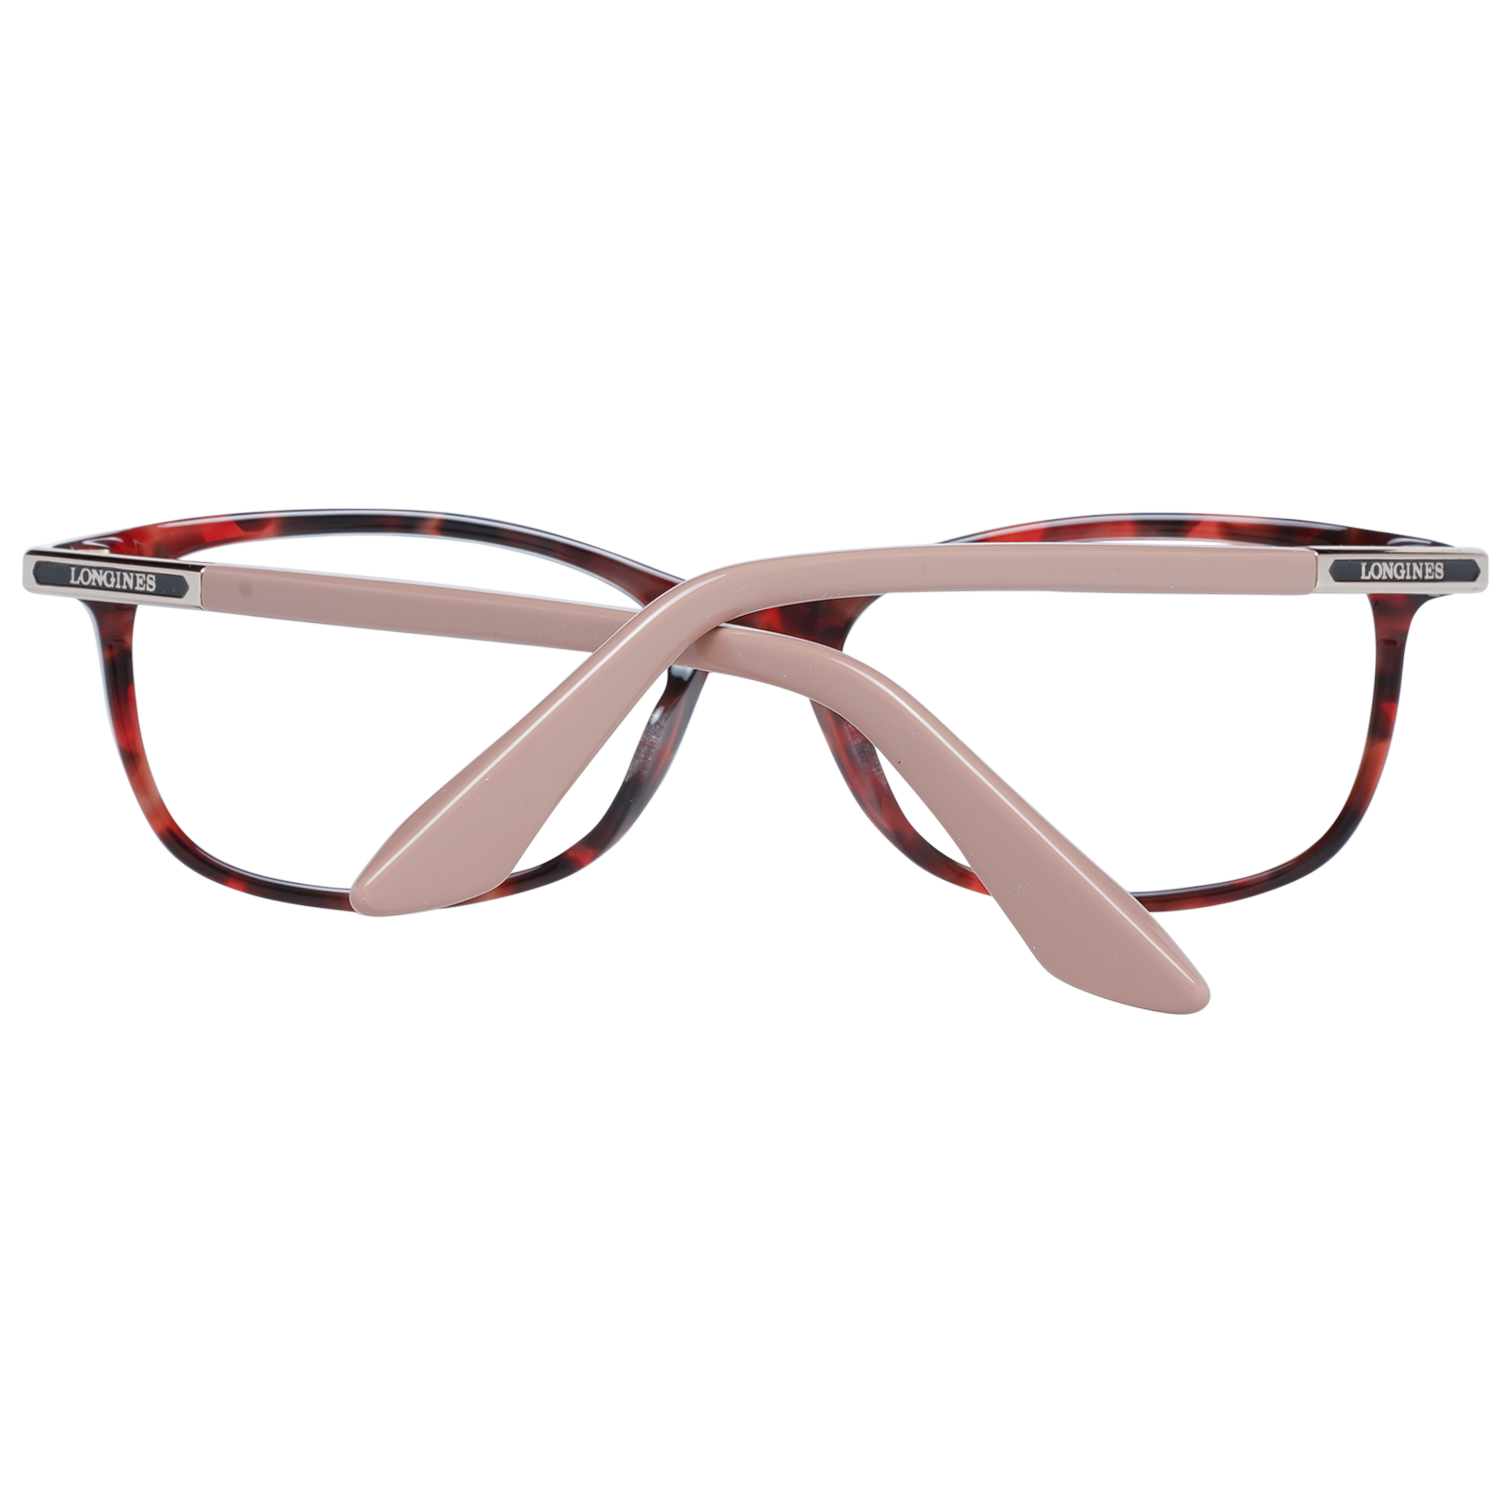 Longines Frames Longines Optical Frame LG5012-H 054 54 Eyeglasses Eyewear UK USA Australia 